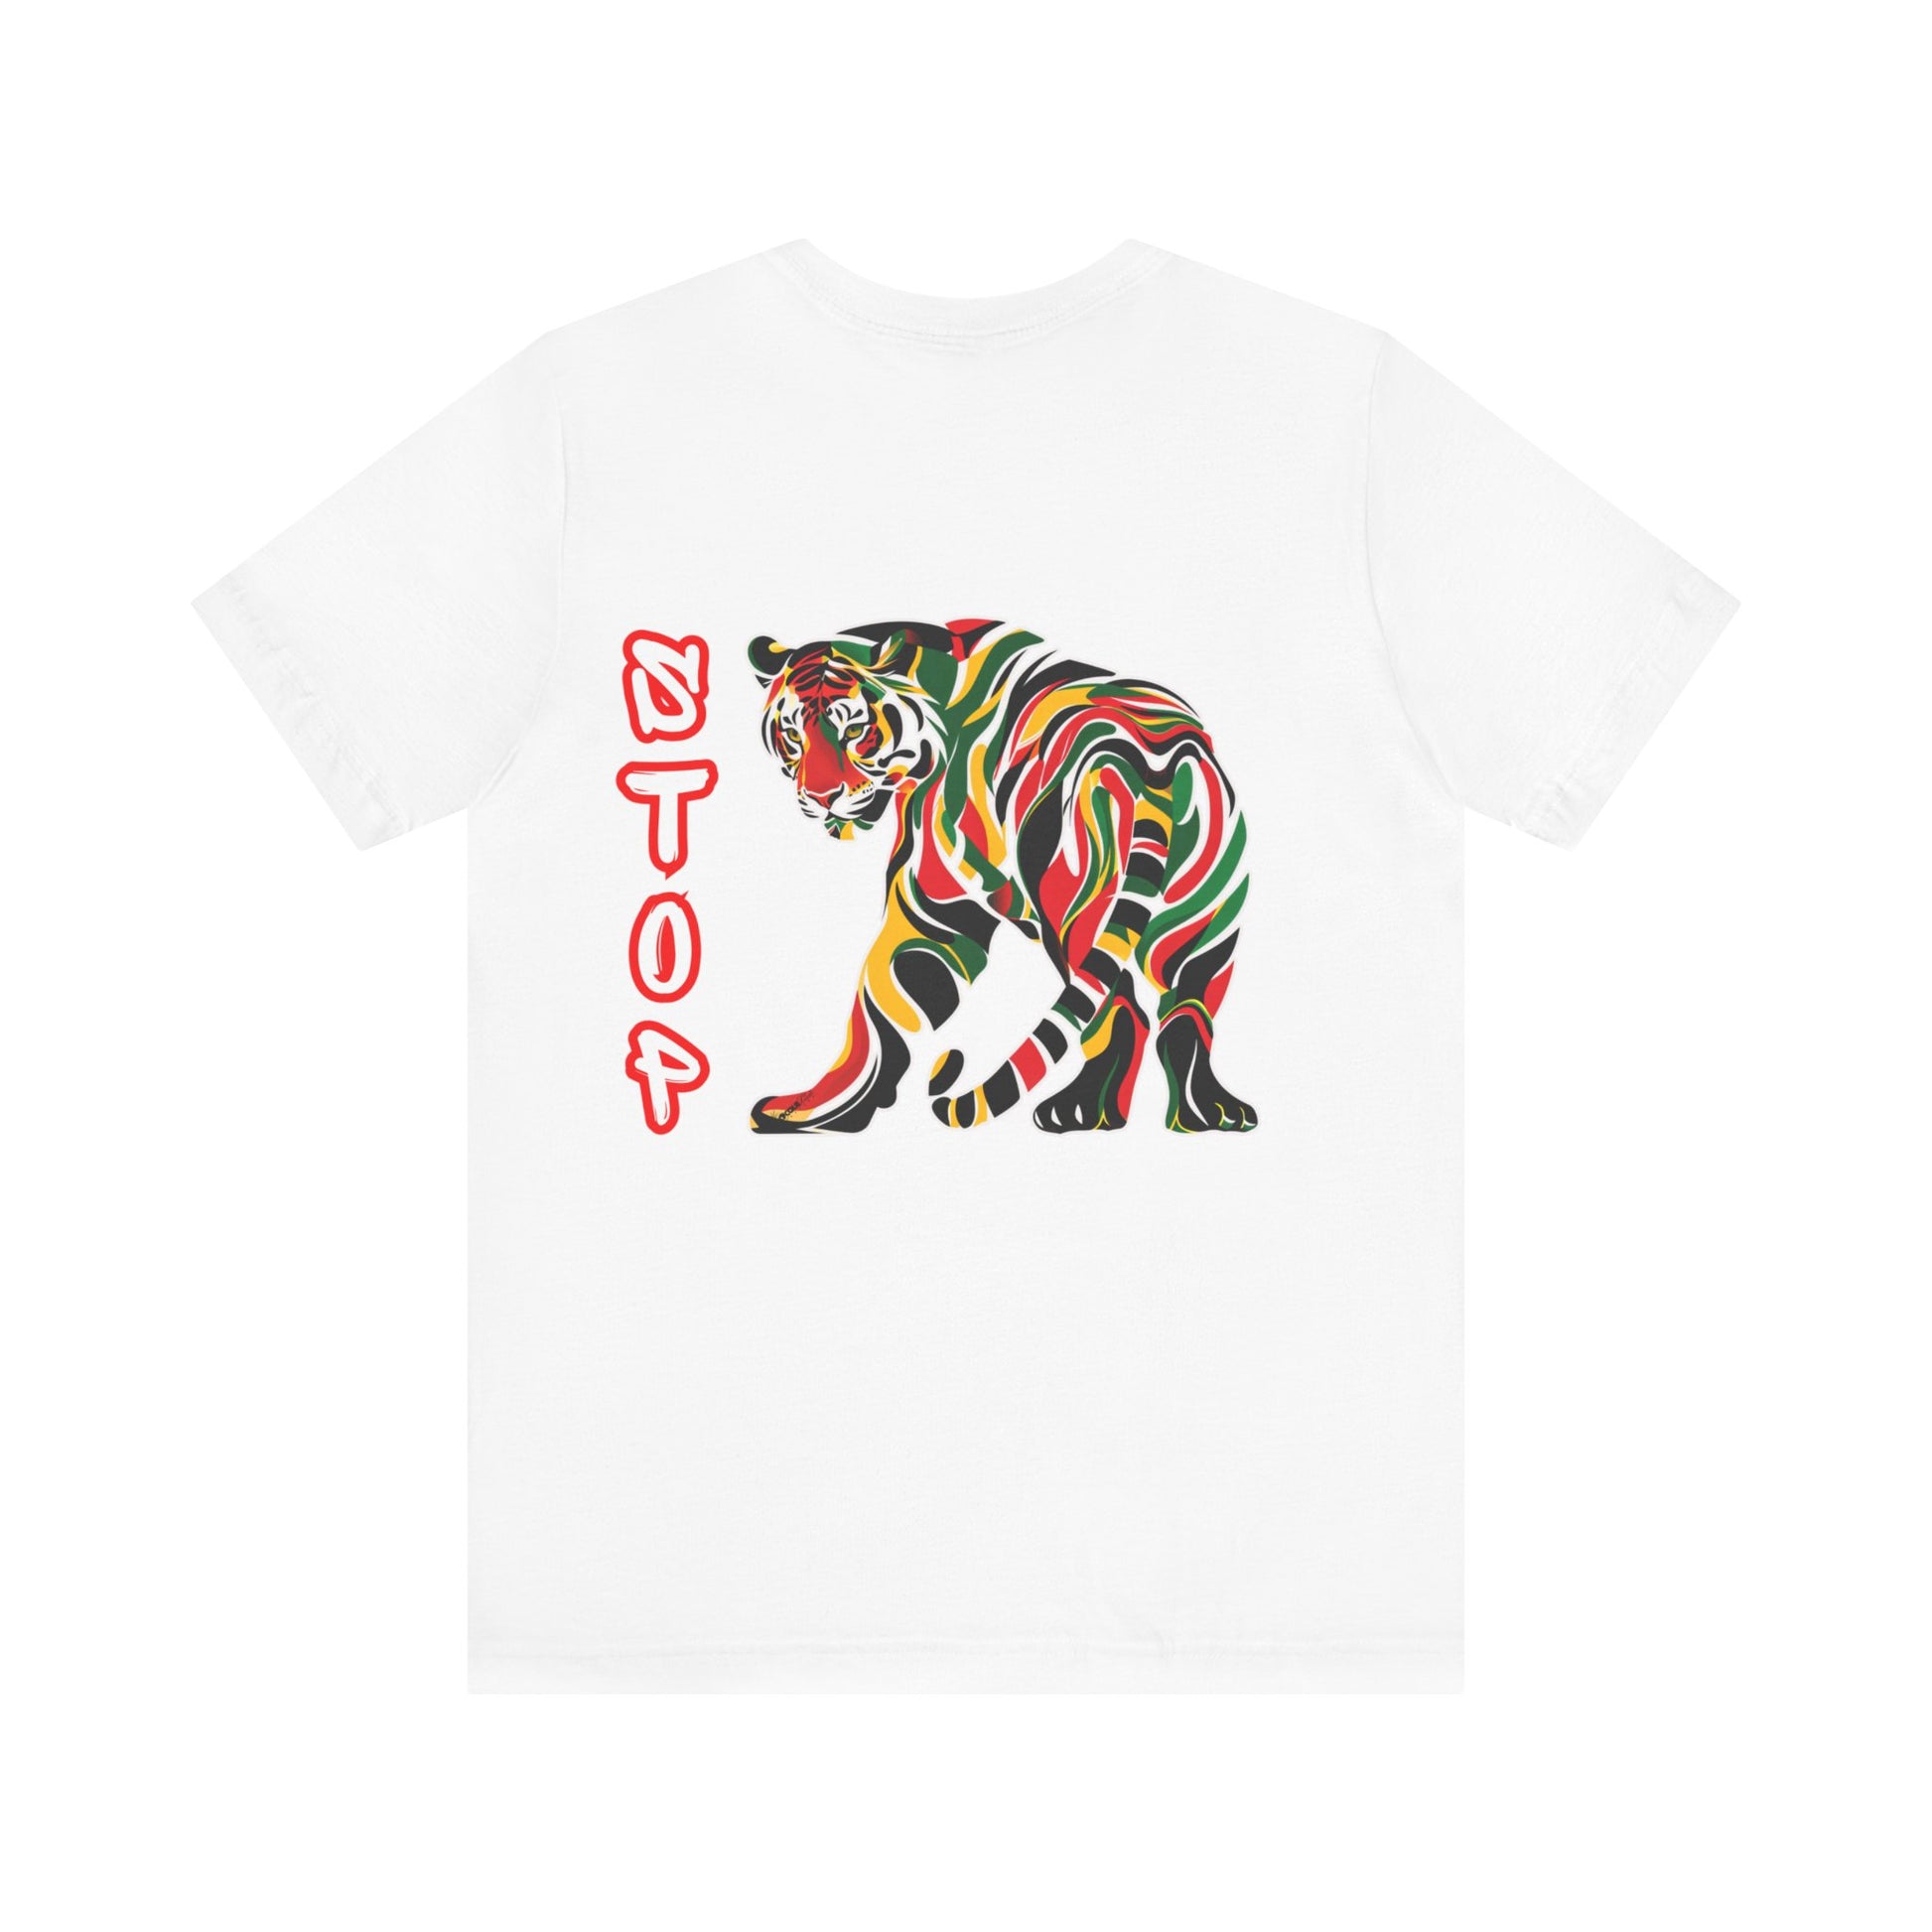 Stop Speaking Death Tee Shirt - Pan-African Tiger Art, Empowering Message Shirt, black tee shirt